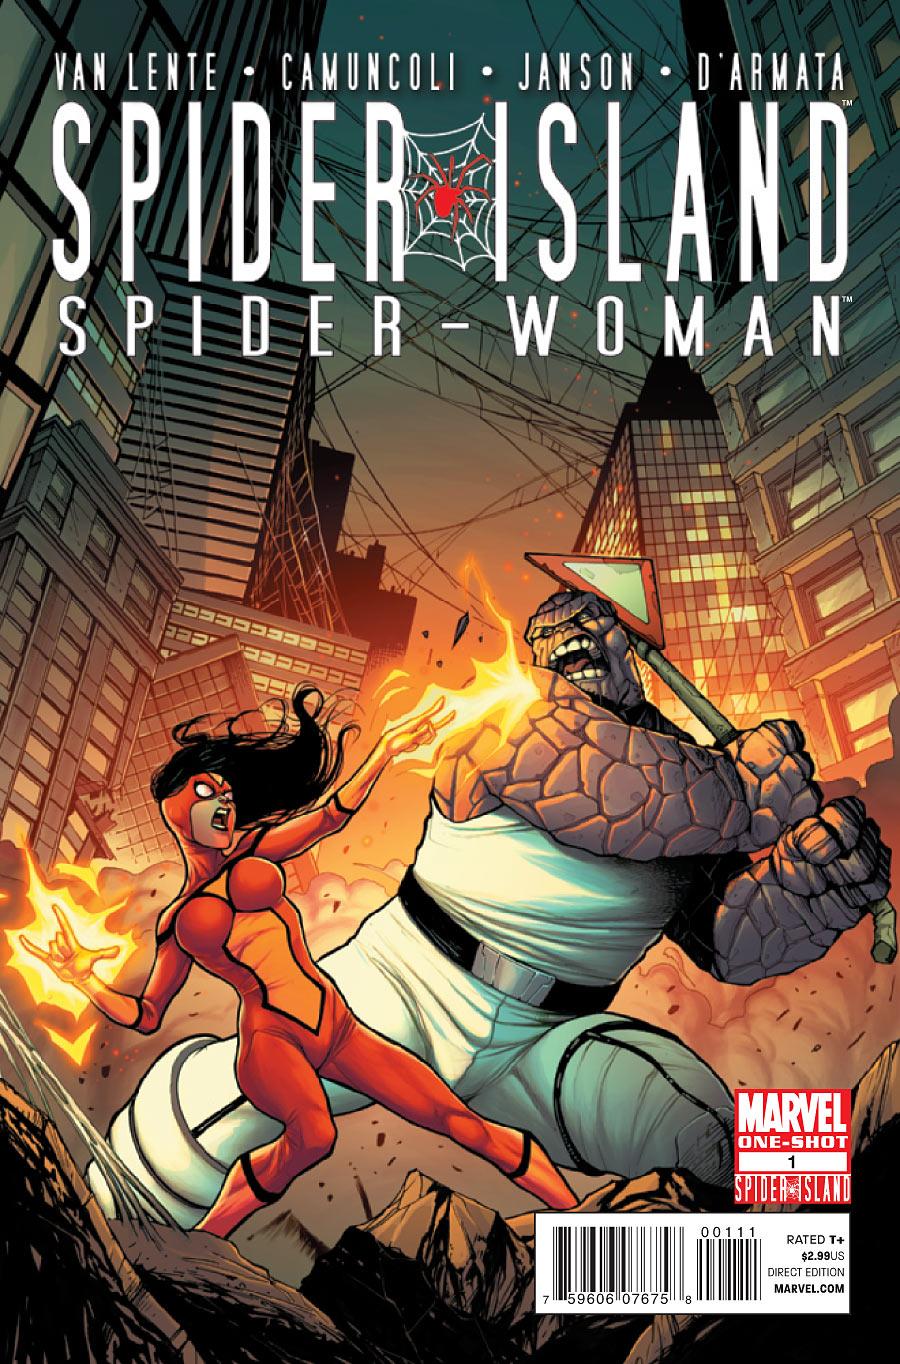 Spider-Island: Spider-Woman Vol. 1 #1